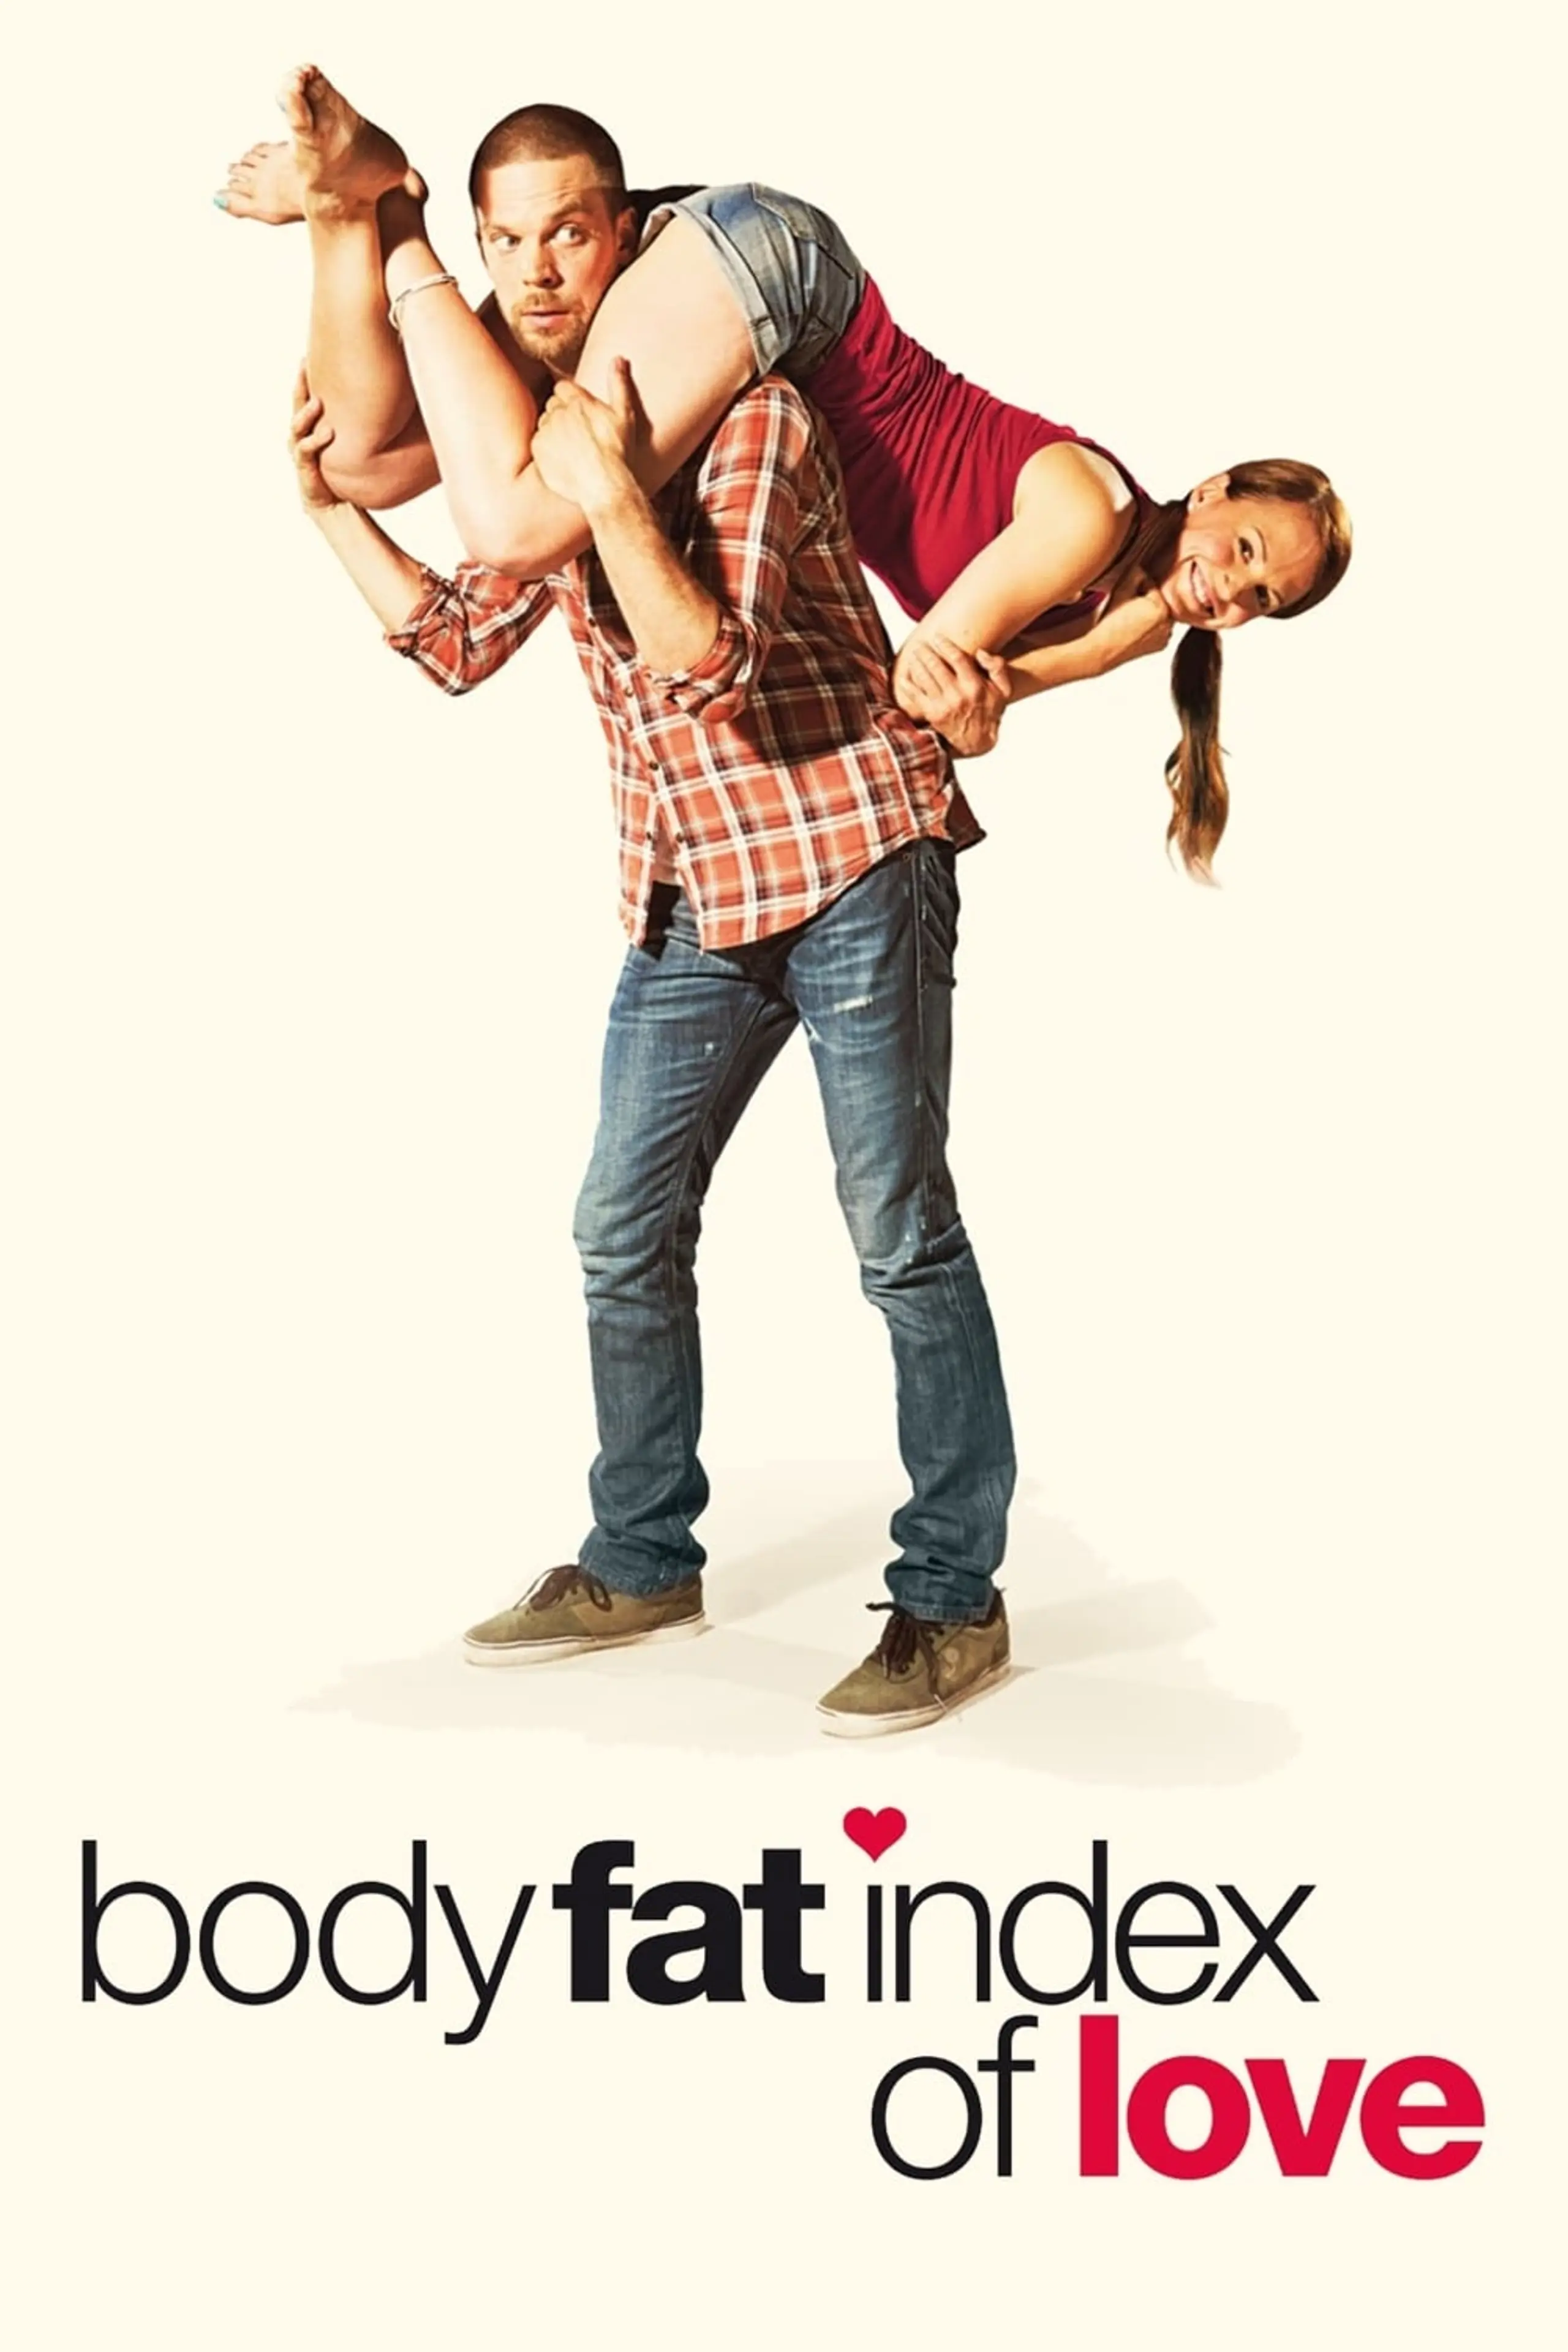 Body Fat Index of Love - Wer glaubt schon an die Liebe?